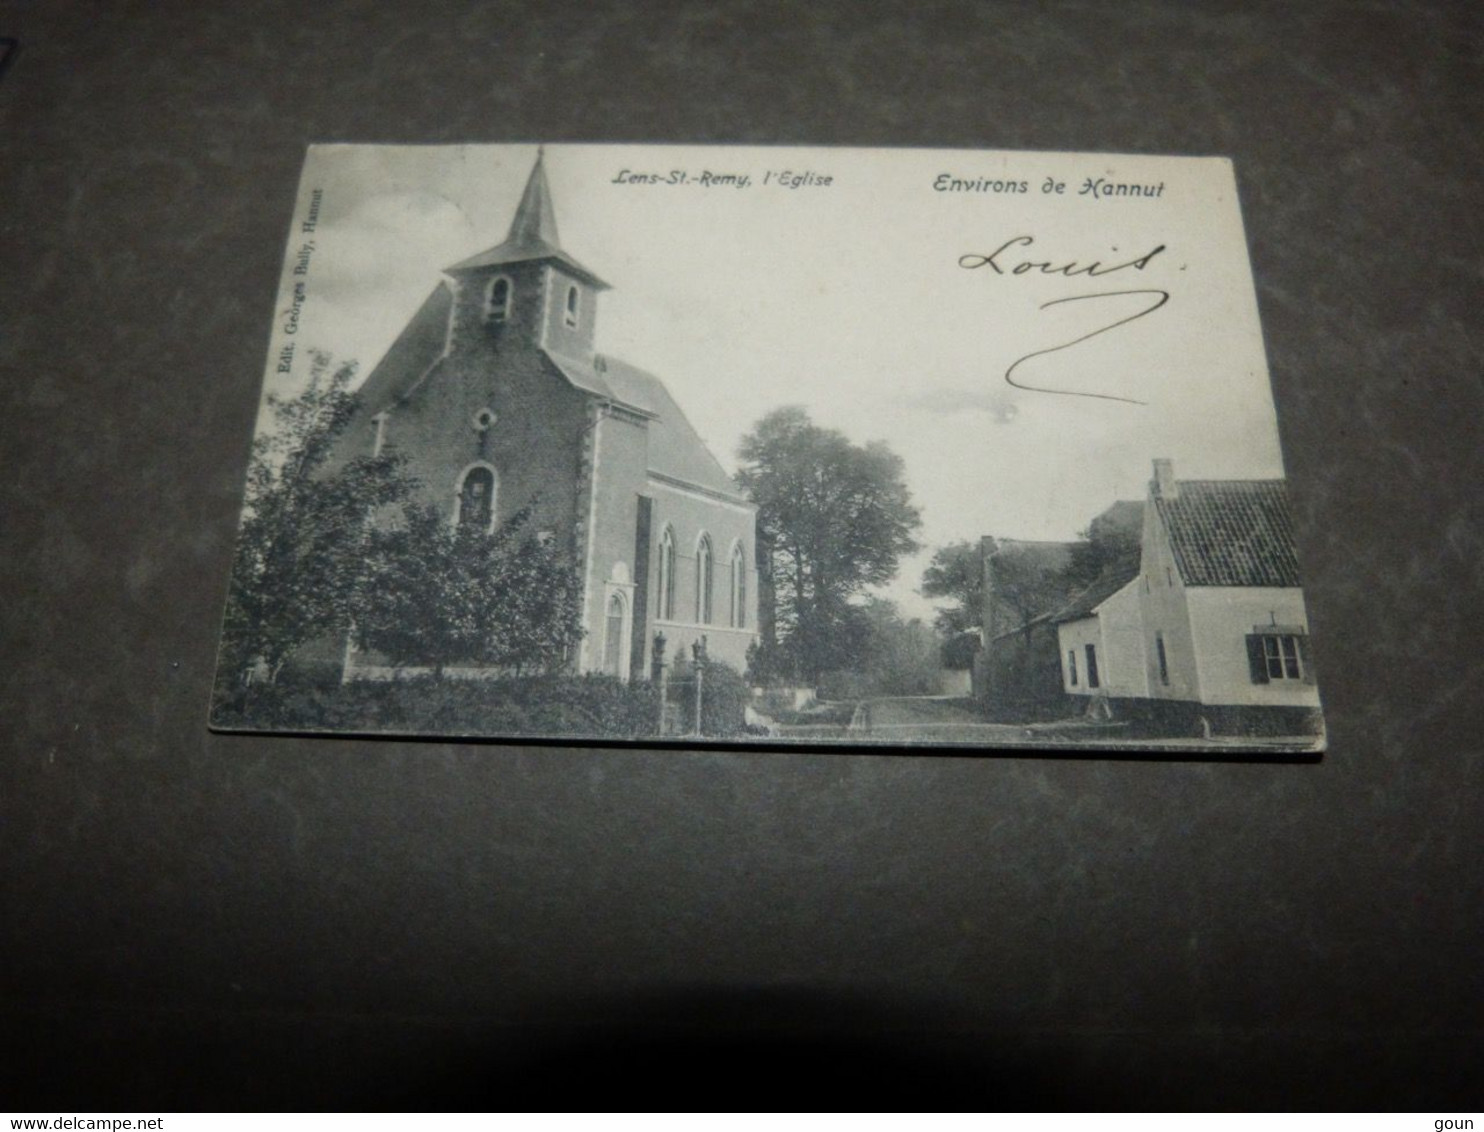 Carte Postale Lens-St-Remy L'église - Hannuit